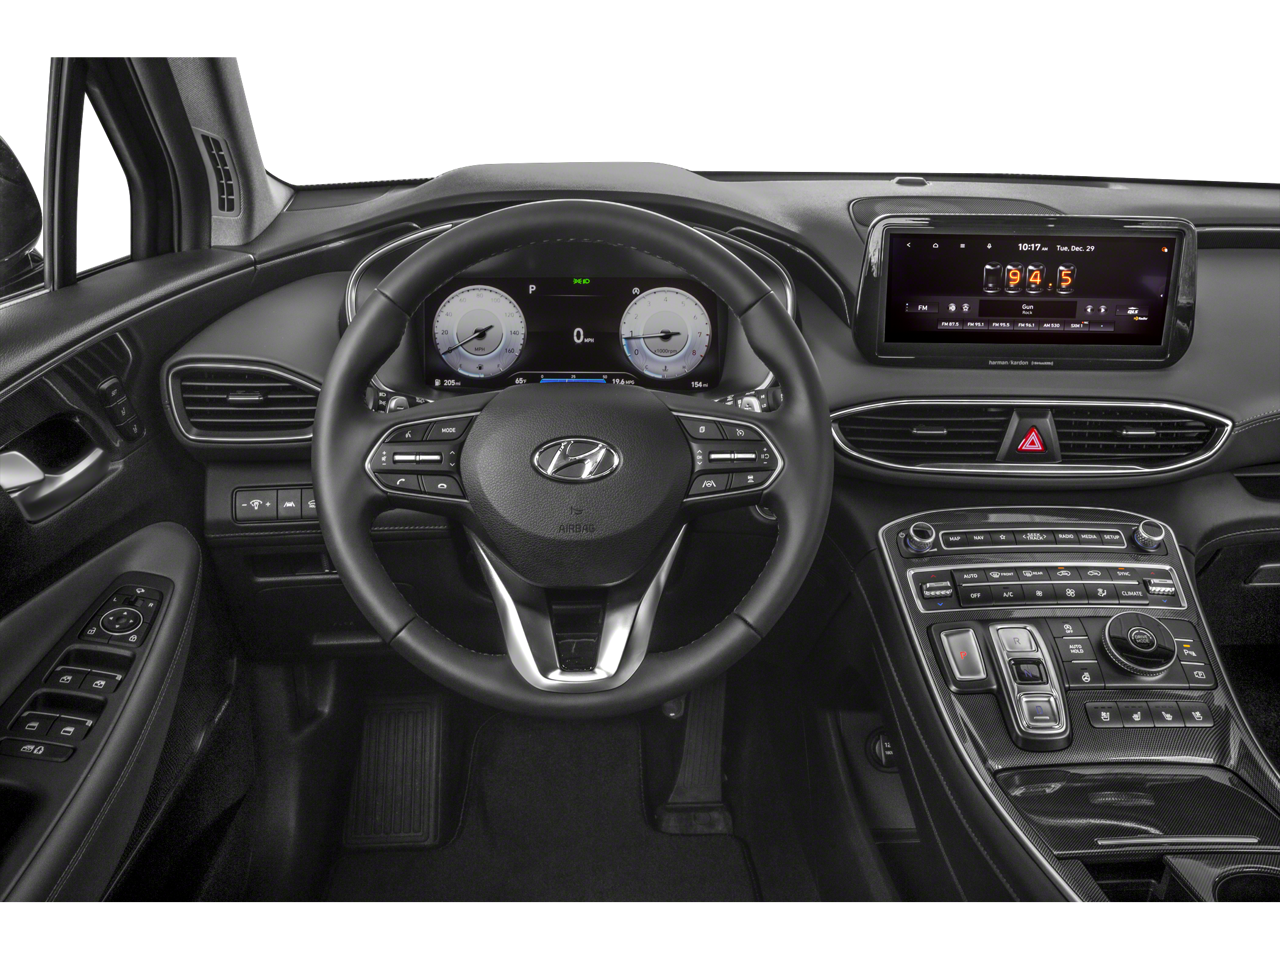 2021 Hyundai Santa Fe Limited (DCT) Front-wheel Drive